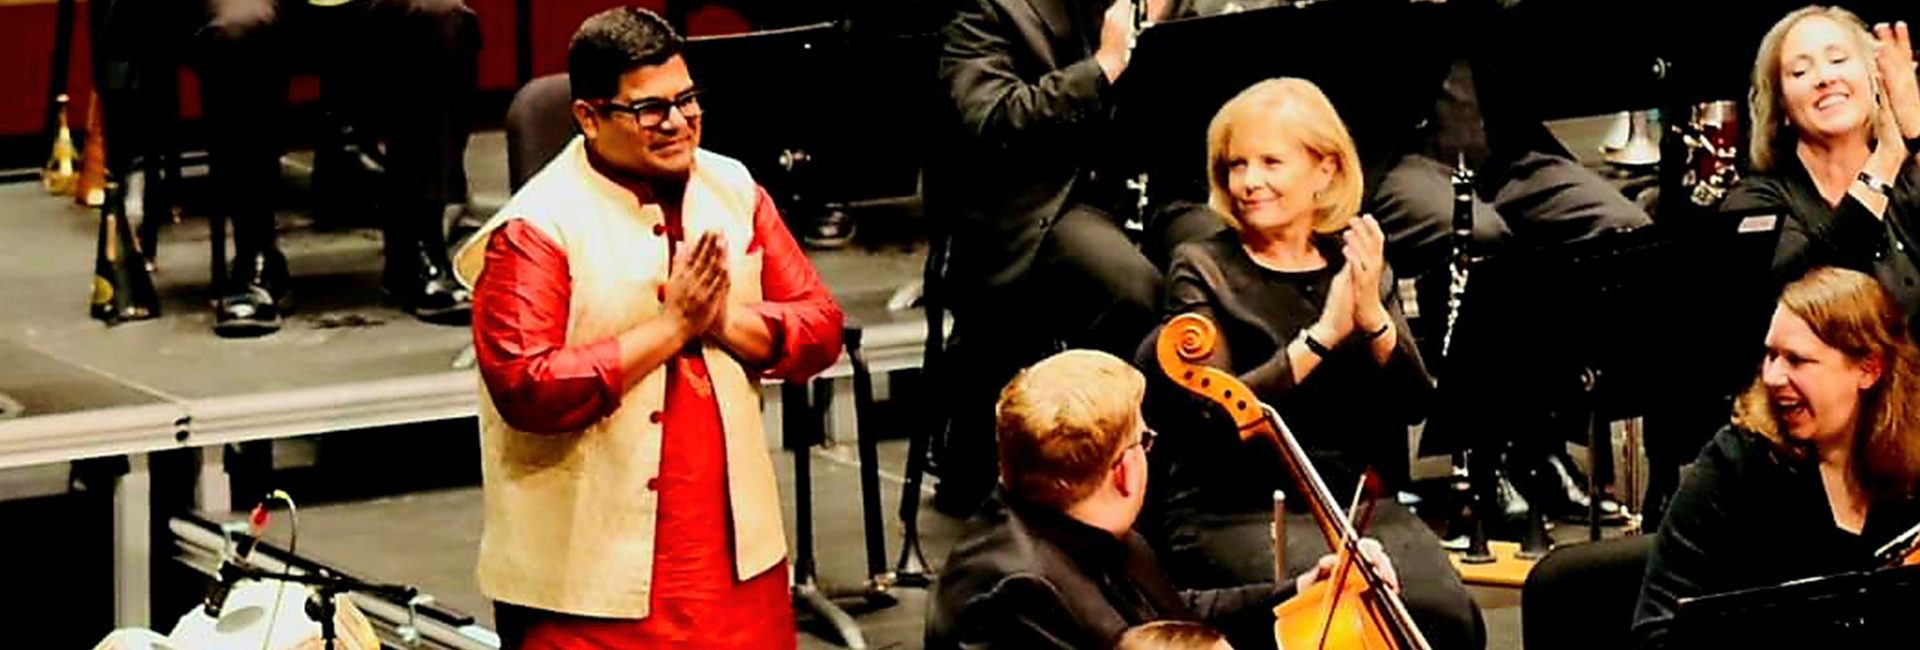 Sutanu Sur: India's zachte kracht naar de wereld brengen door middel van muziek